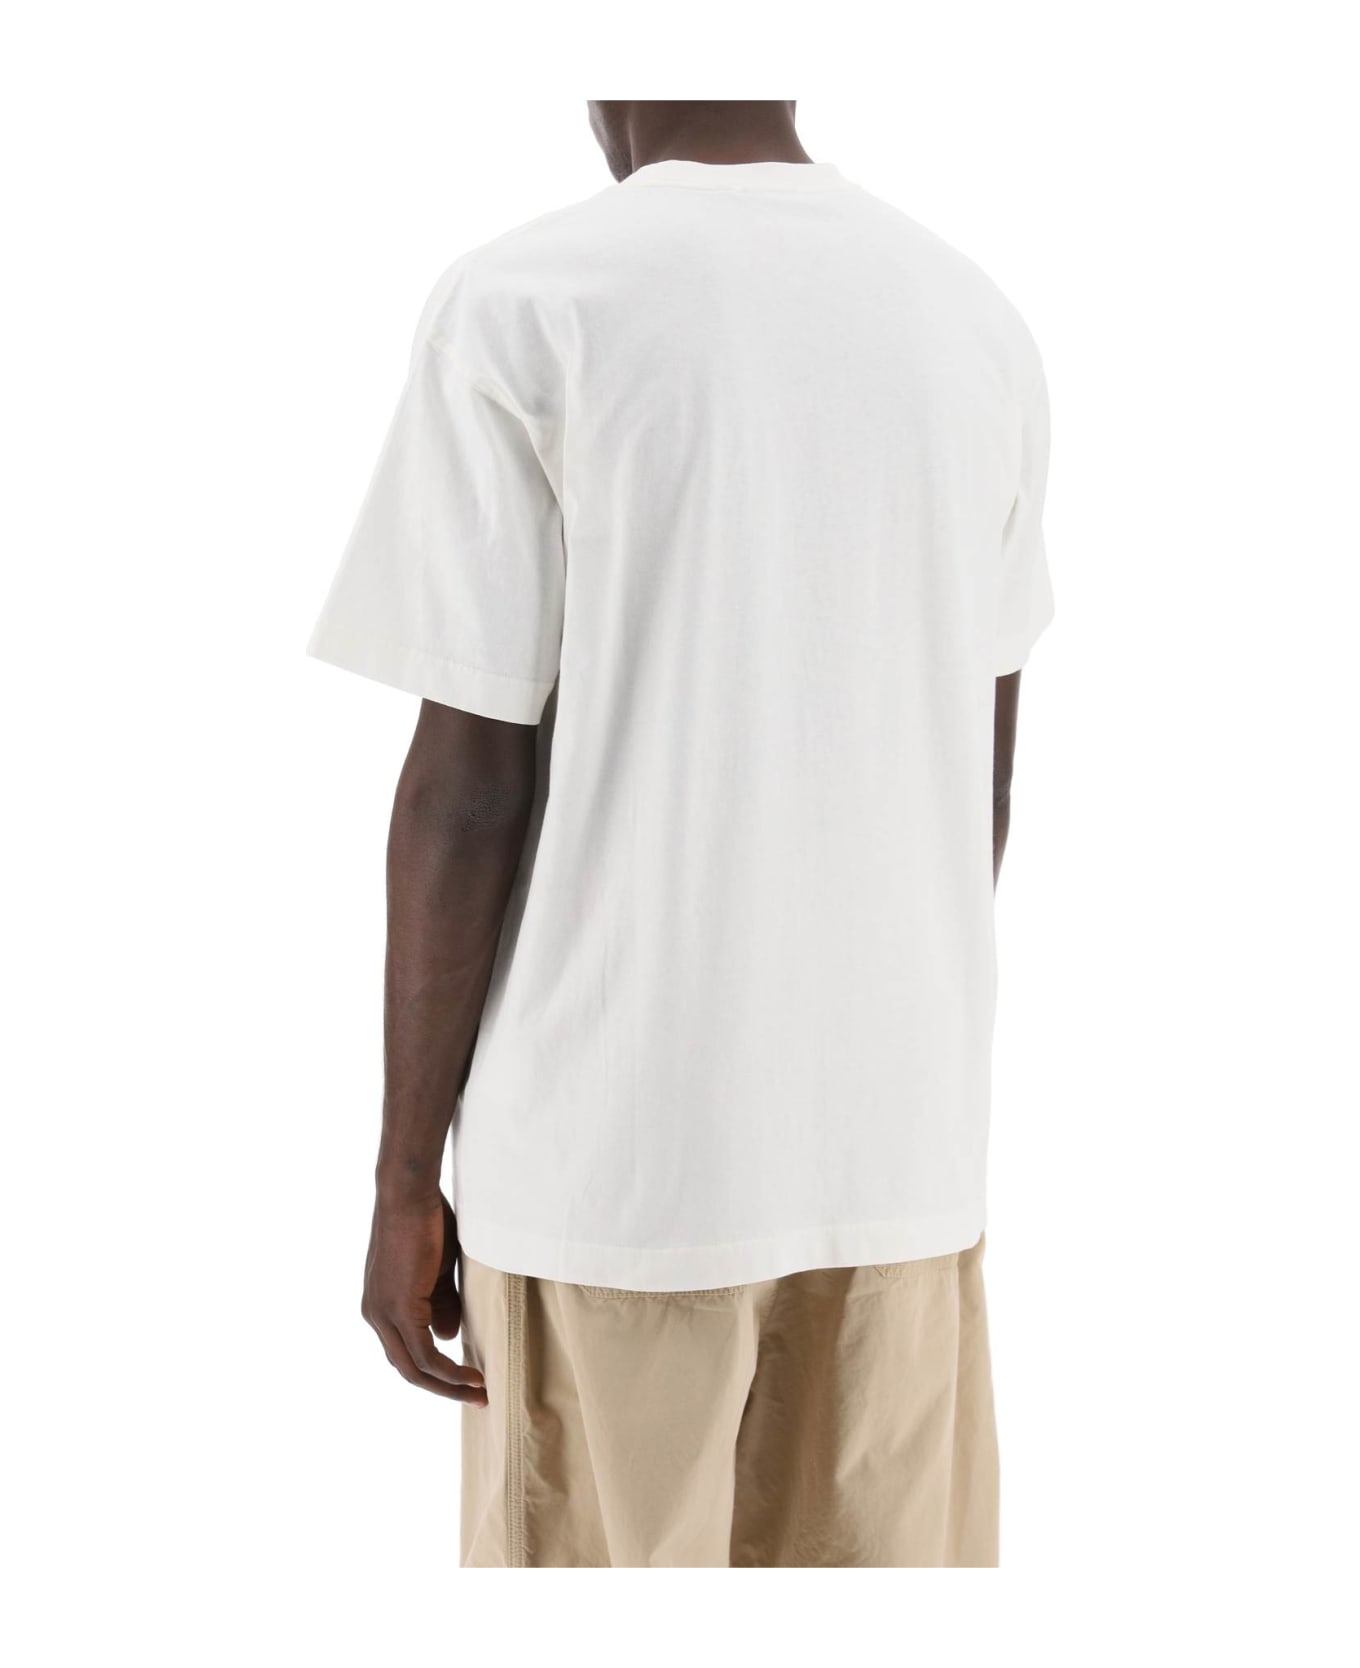 Carhartt Nelson T-shirt - WAX (White)